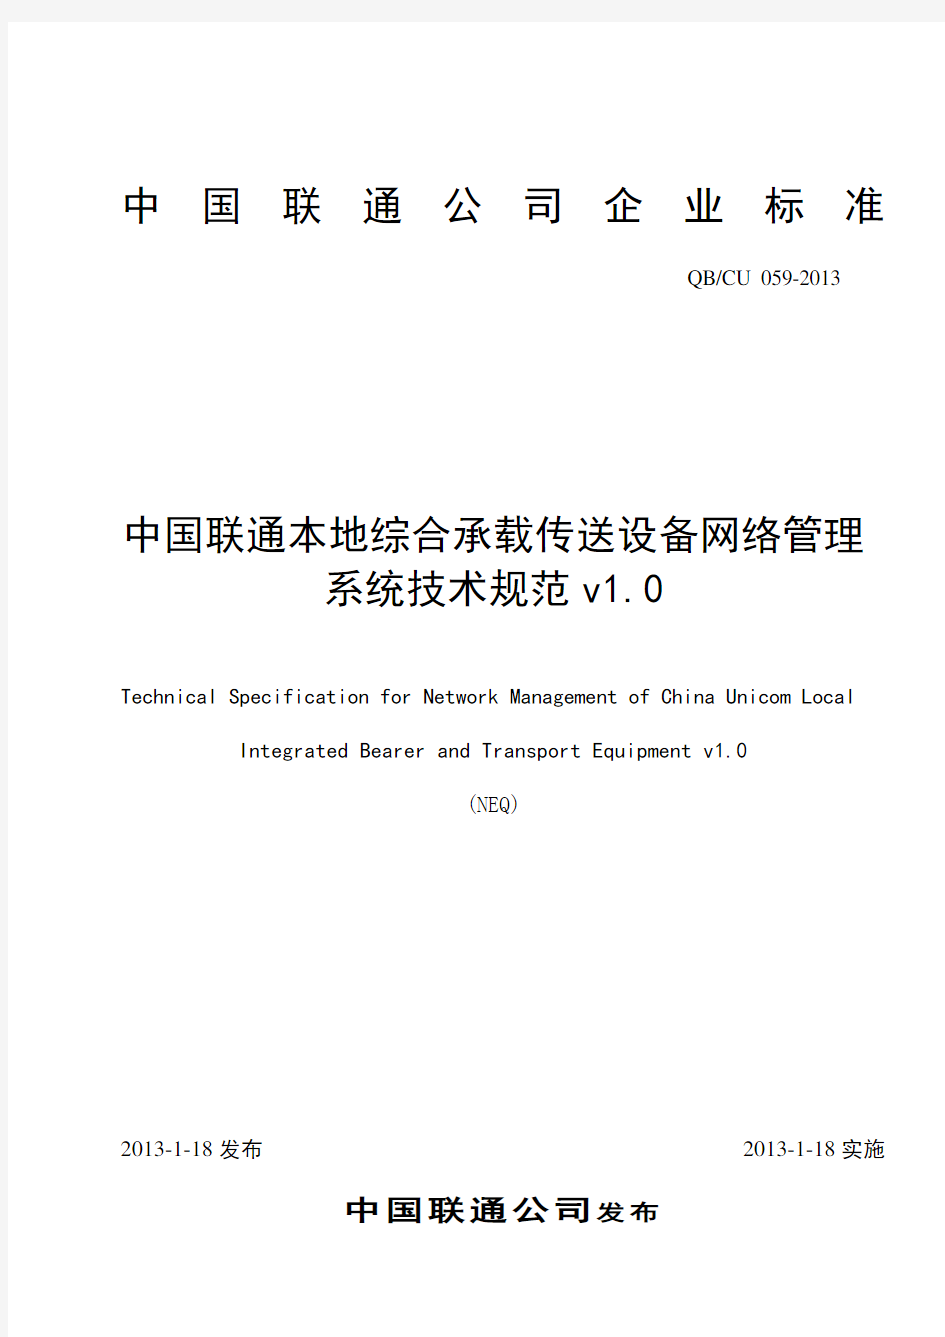 中国联通综合承载与传送设备网管系统技术规范(DOCX 45页)